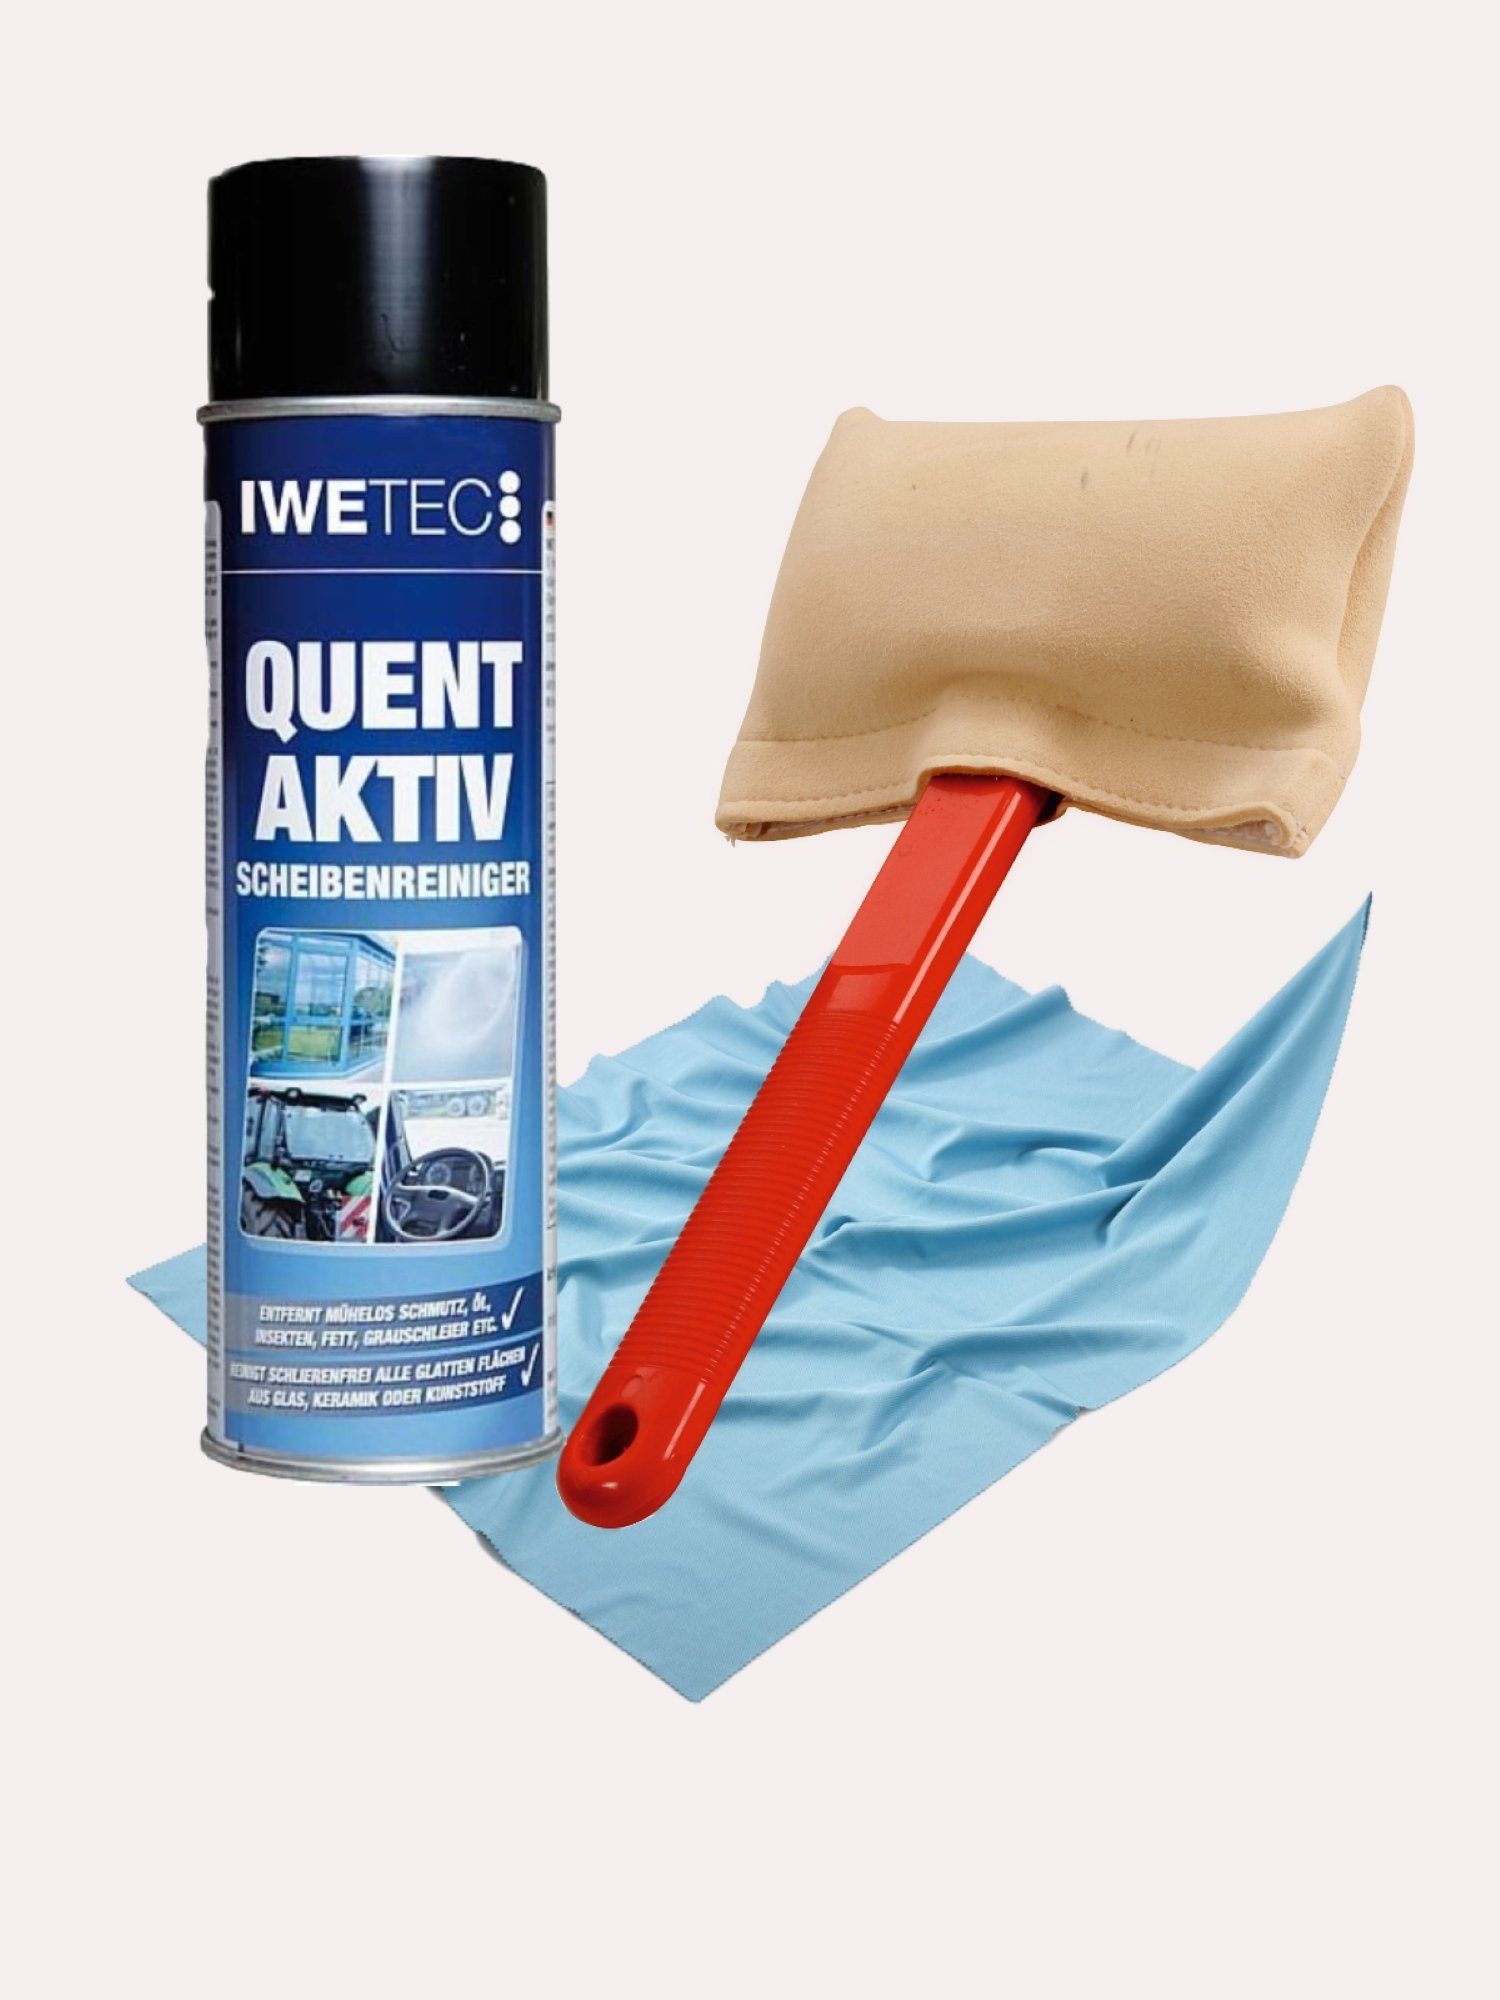 Werkshop Müller Windschutzscheiben Reinigungsset 3 teilig Auto-Reinigungsmittel (Sparset, [3-St. 3 Artikel ideal für die Reinigung von Windschutzscheiben)